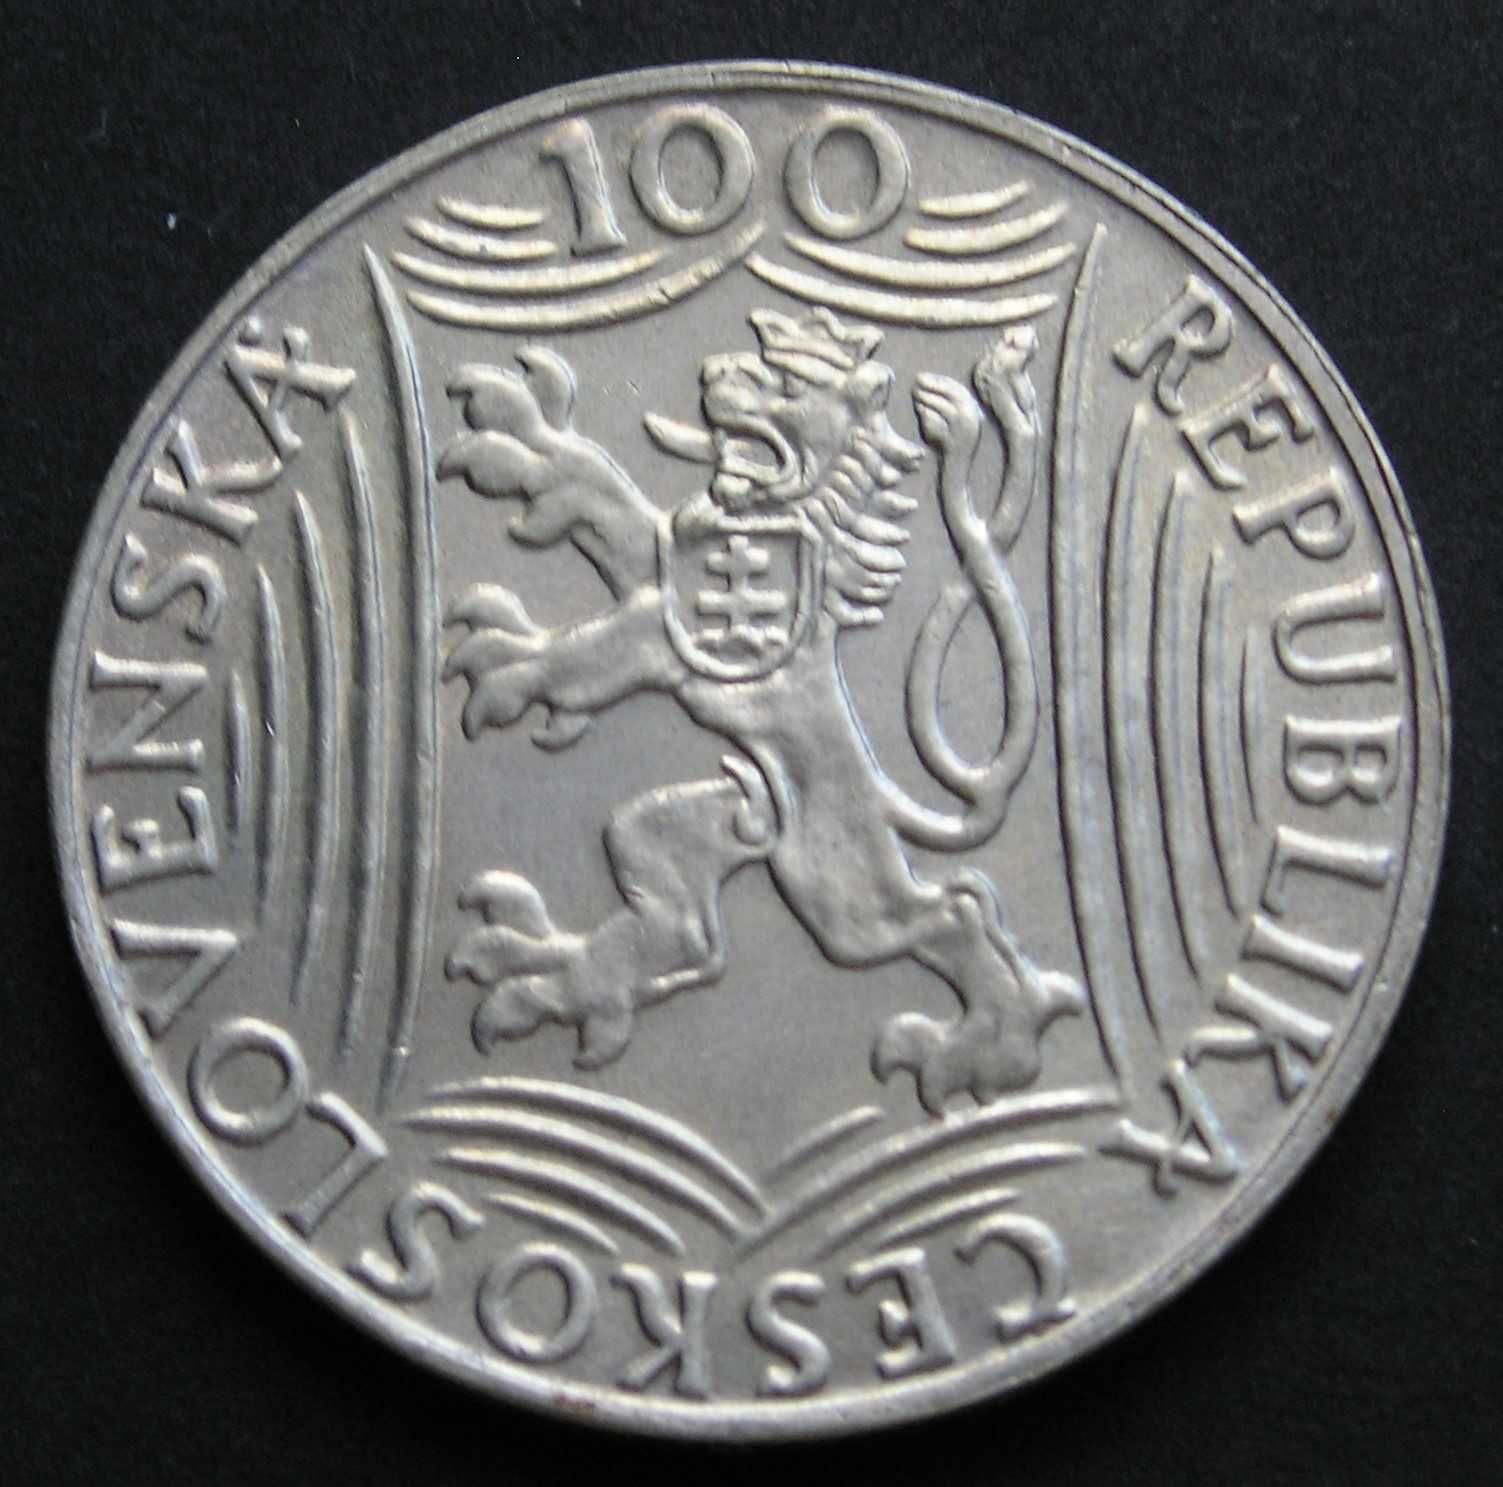 Czechosłowacja 100 koron 1949 - Józef Stalin - srebro